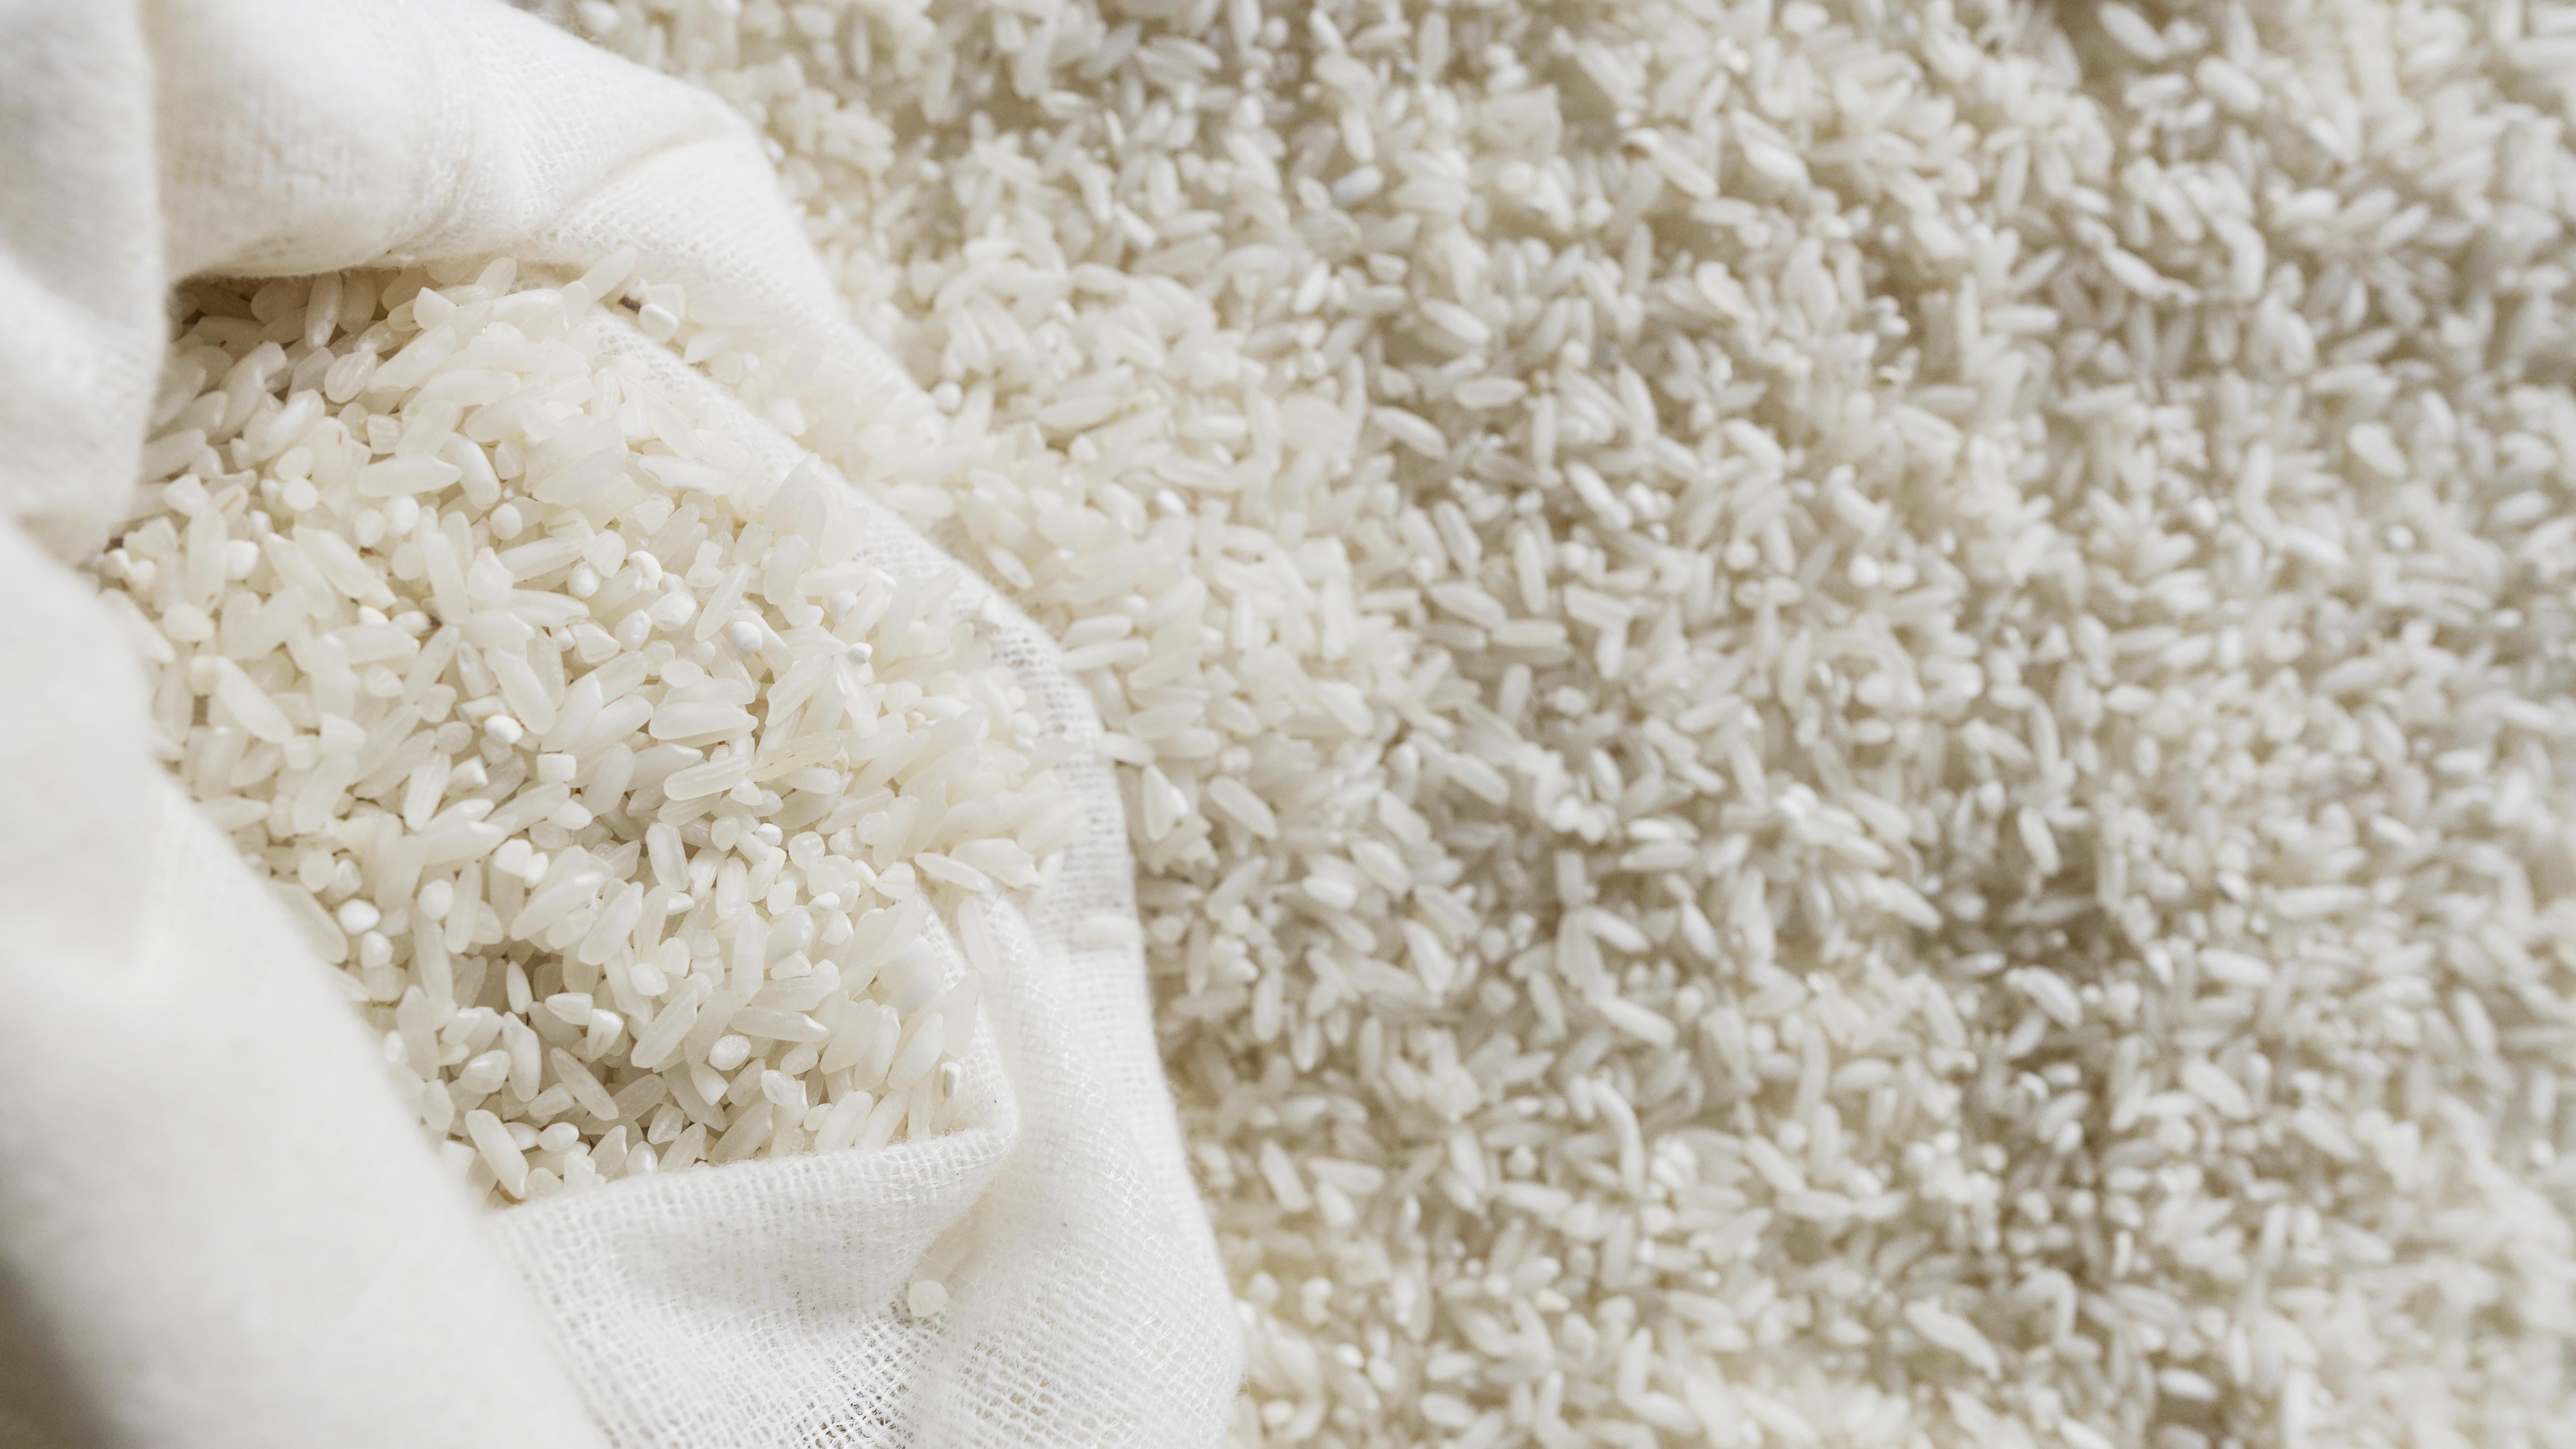 ¿Por qué se debe lavar el arroz antes de cocinarlo? | ¿Por qué se le quita el almidón al arroz? 